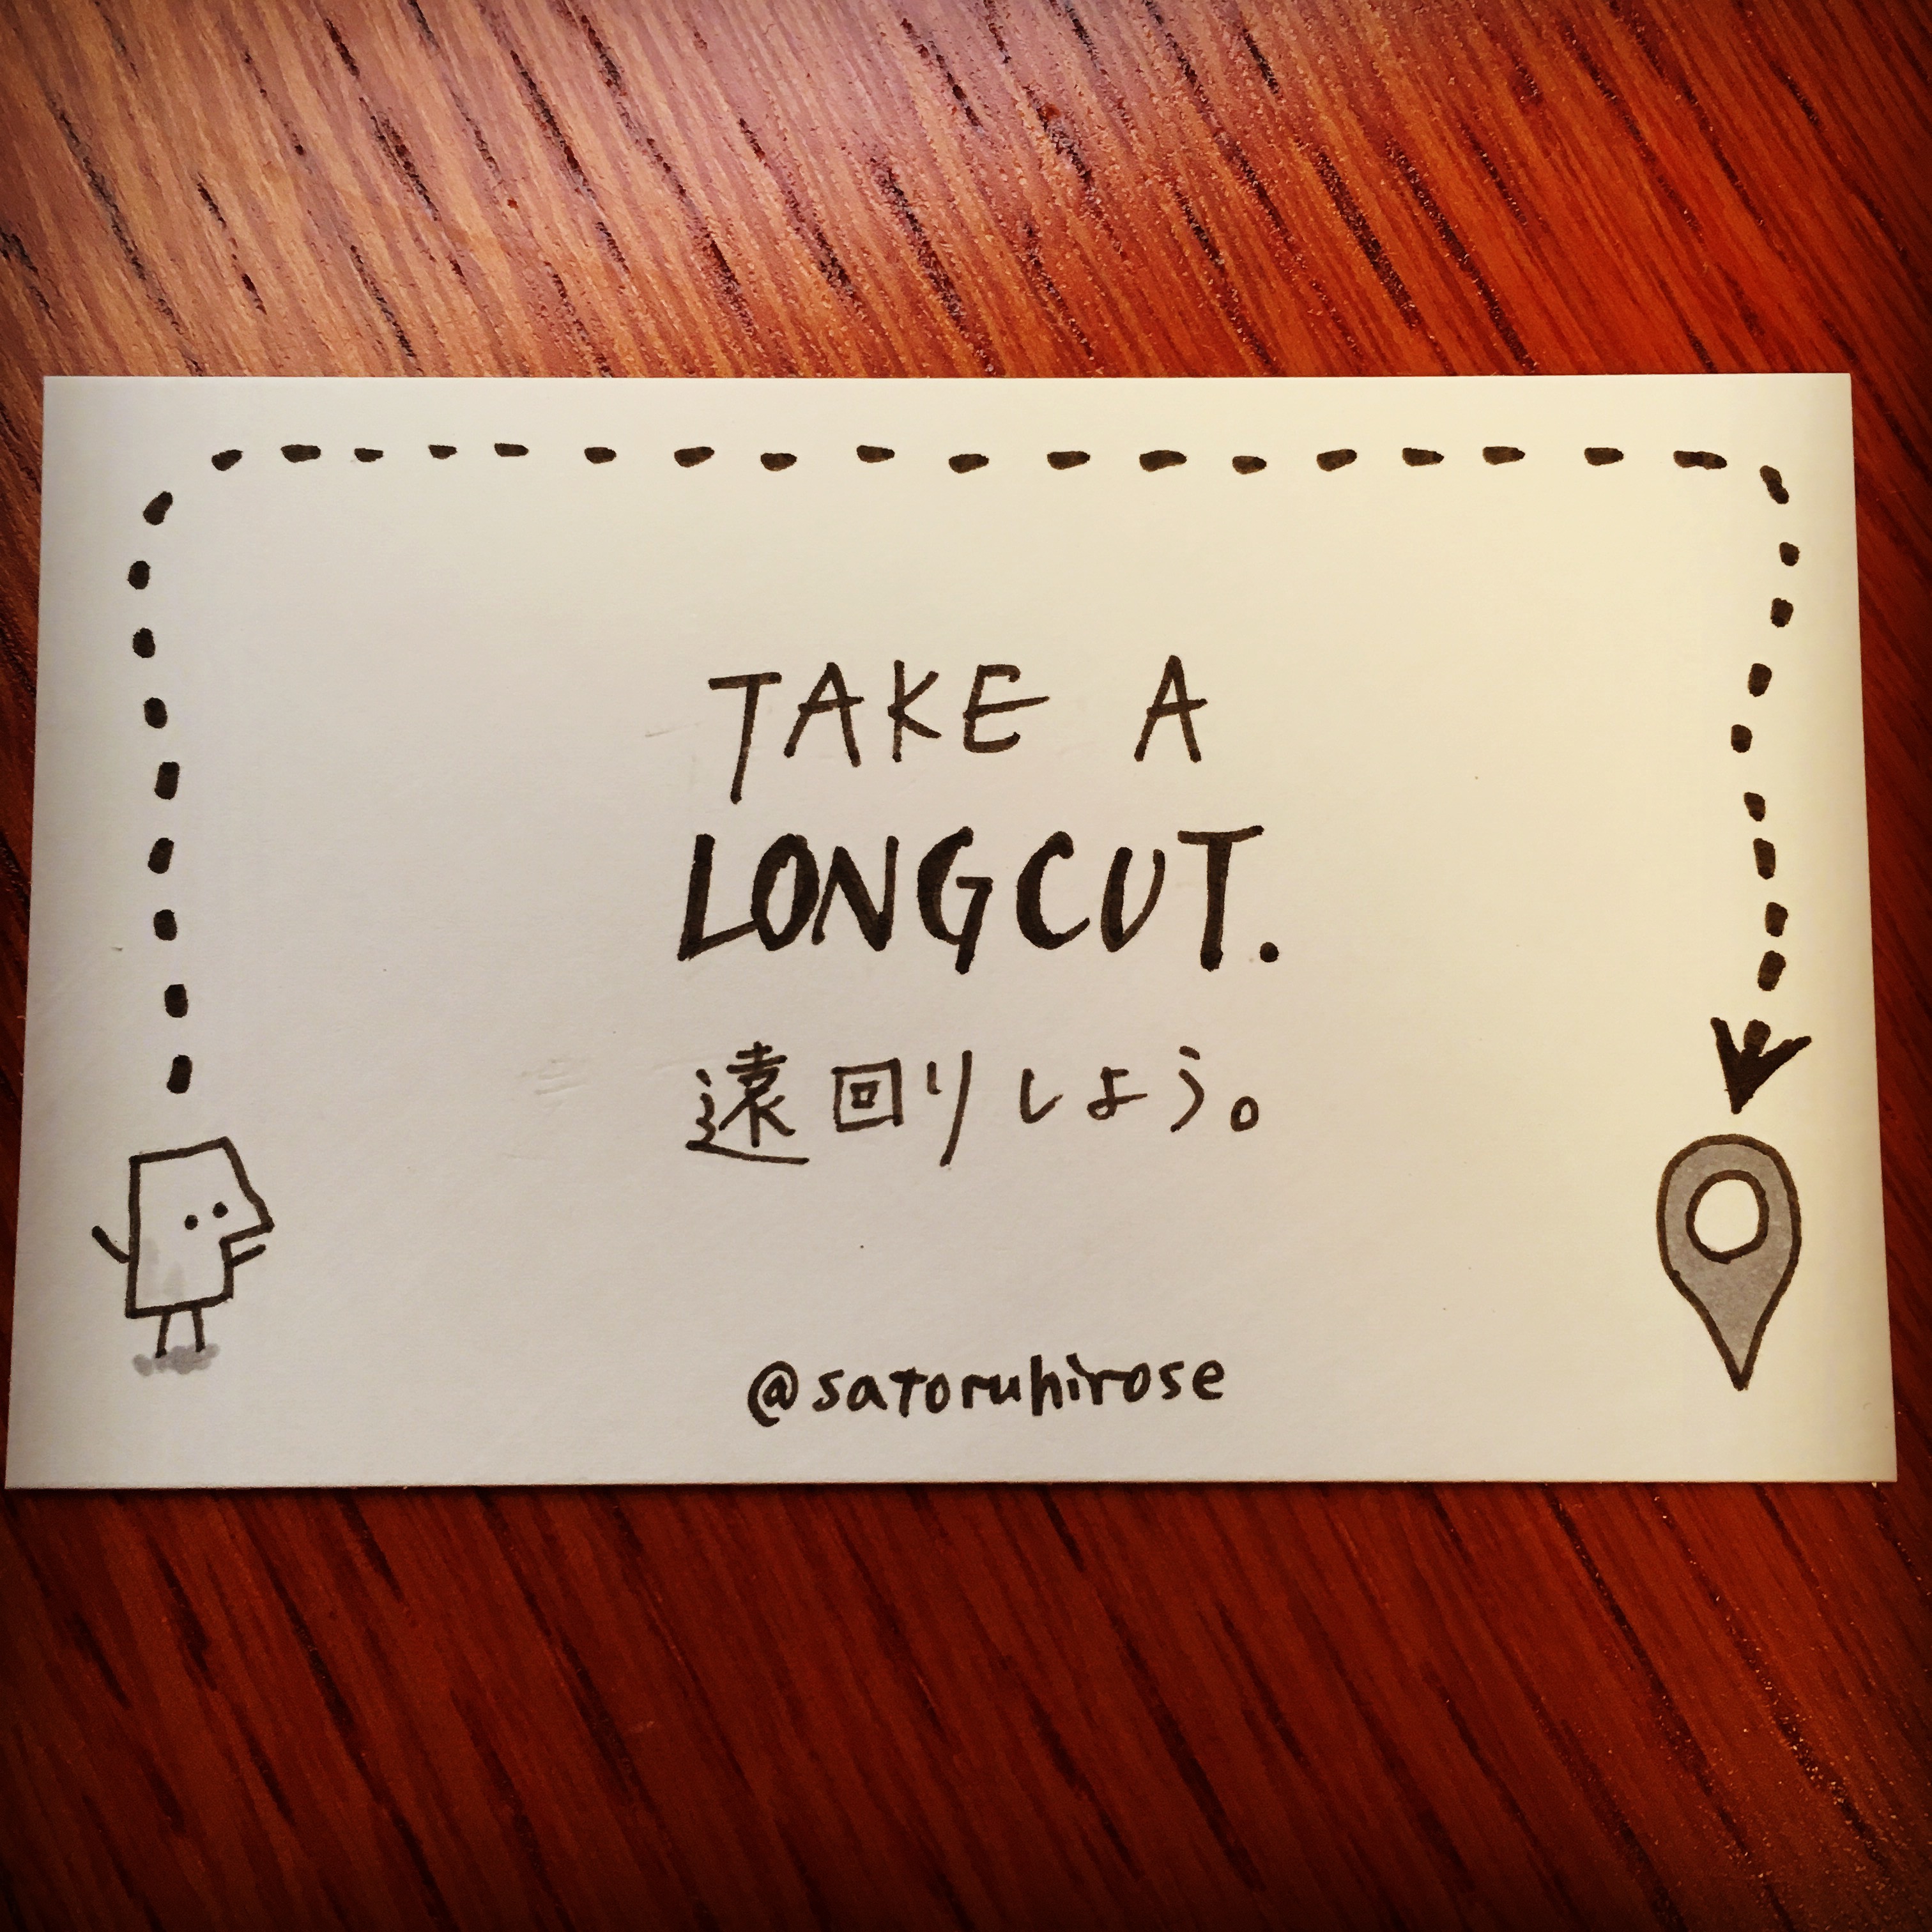 Take a longcut.